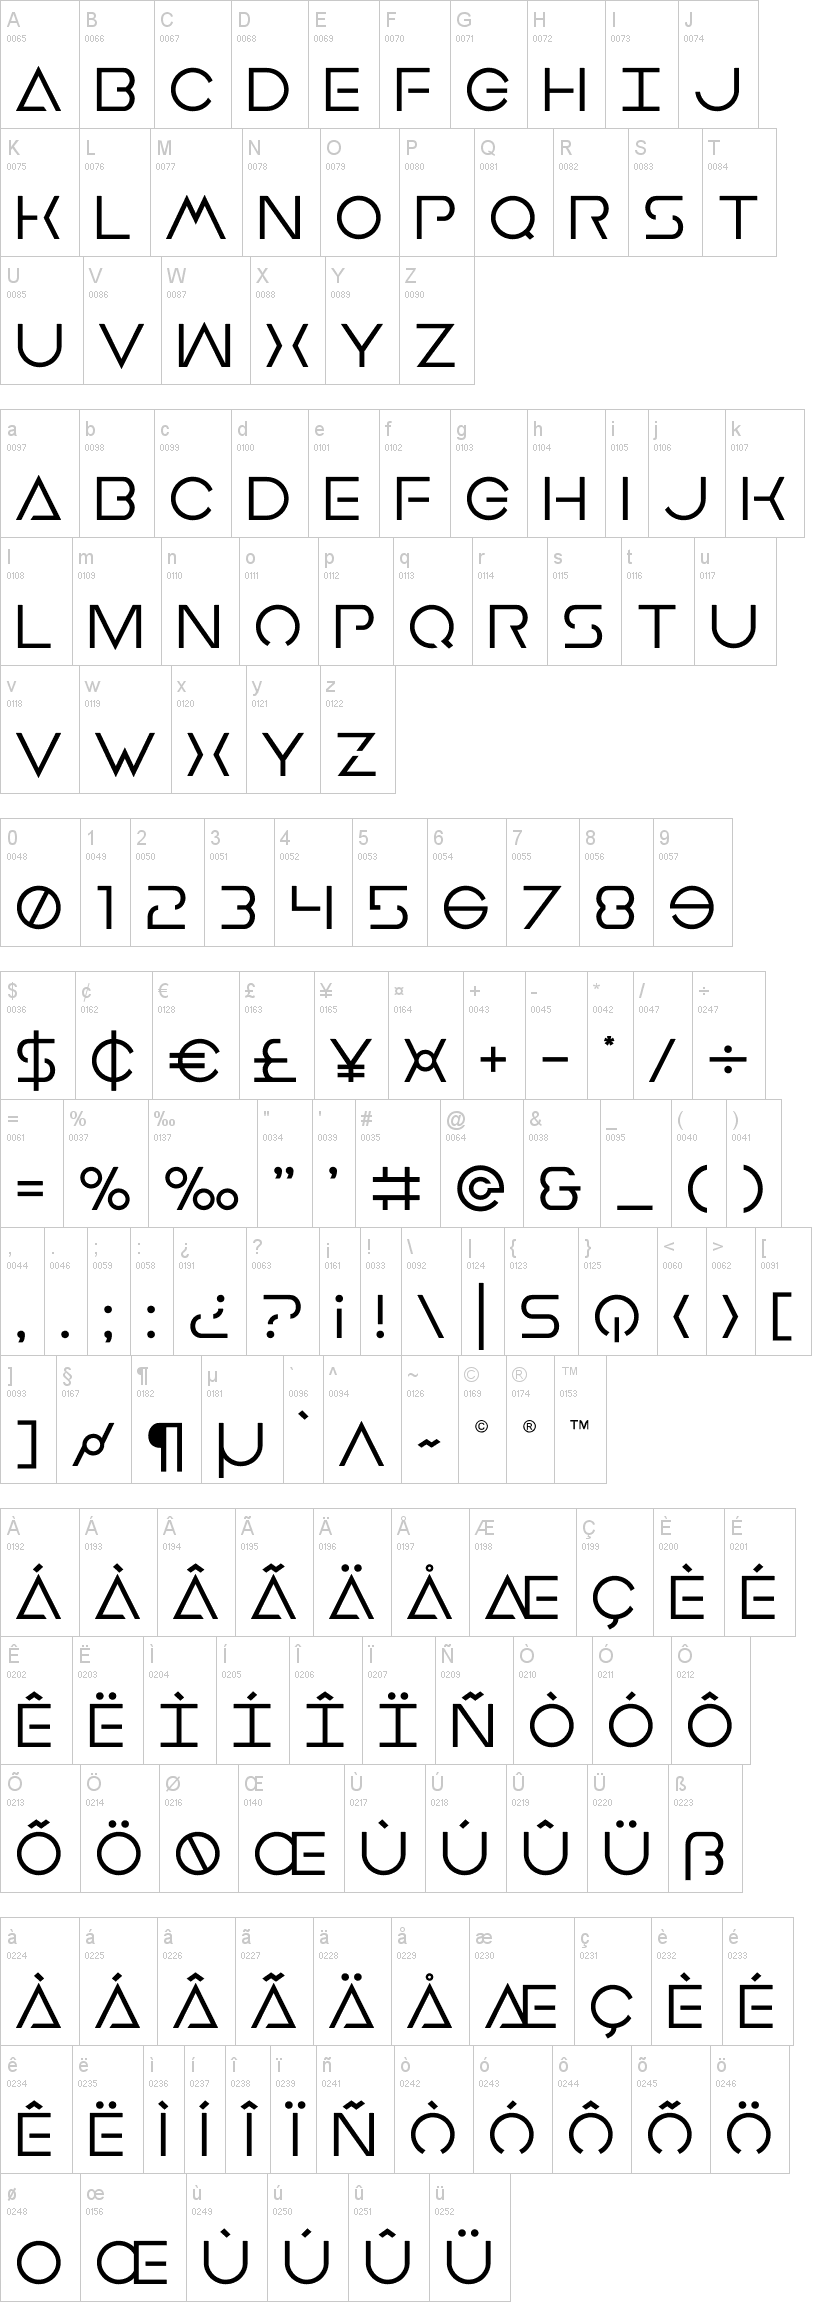 American typewriter dafont script download